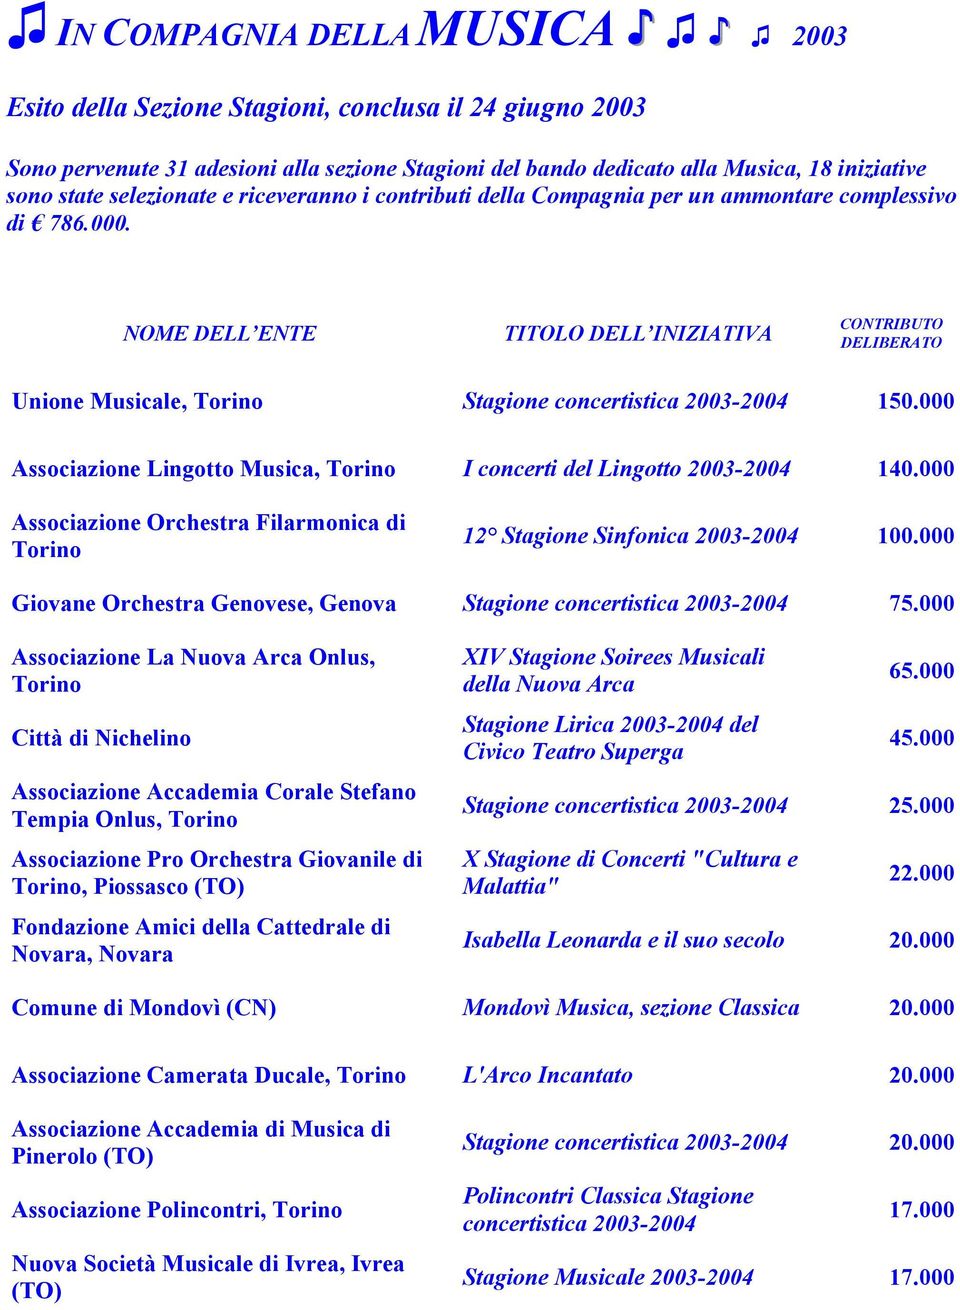 NOME DELL ENTE TITOLO DELL INIZIATIVA CONTRIBUTO DELIBERATO Unione Musicale, Stagione concertistica 2003-2004 150.000 Associazione Lingotto Musica, I concerti del Lingotto 2003-2004 140.